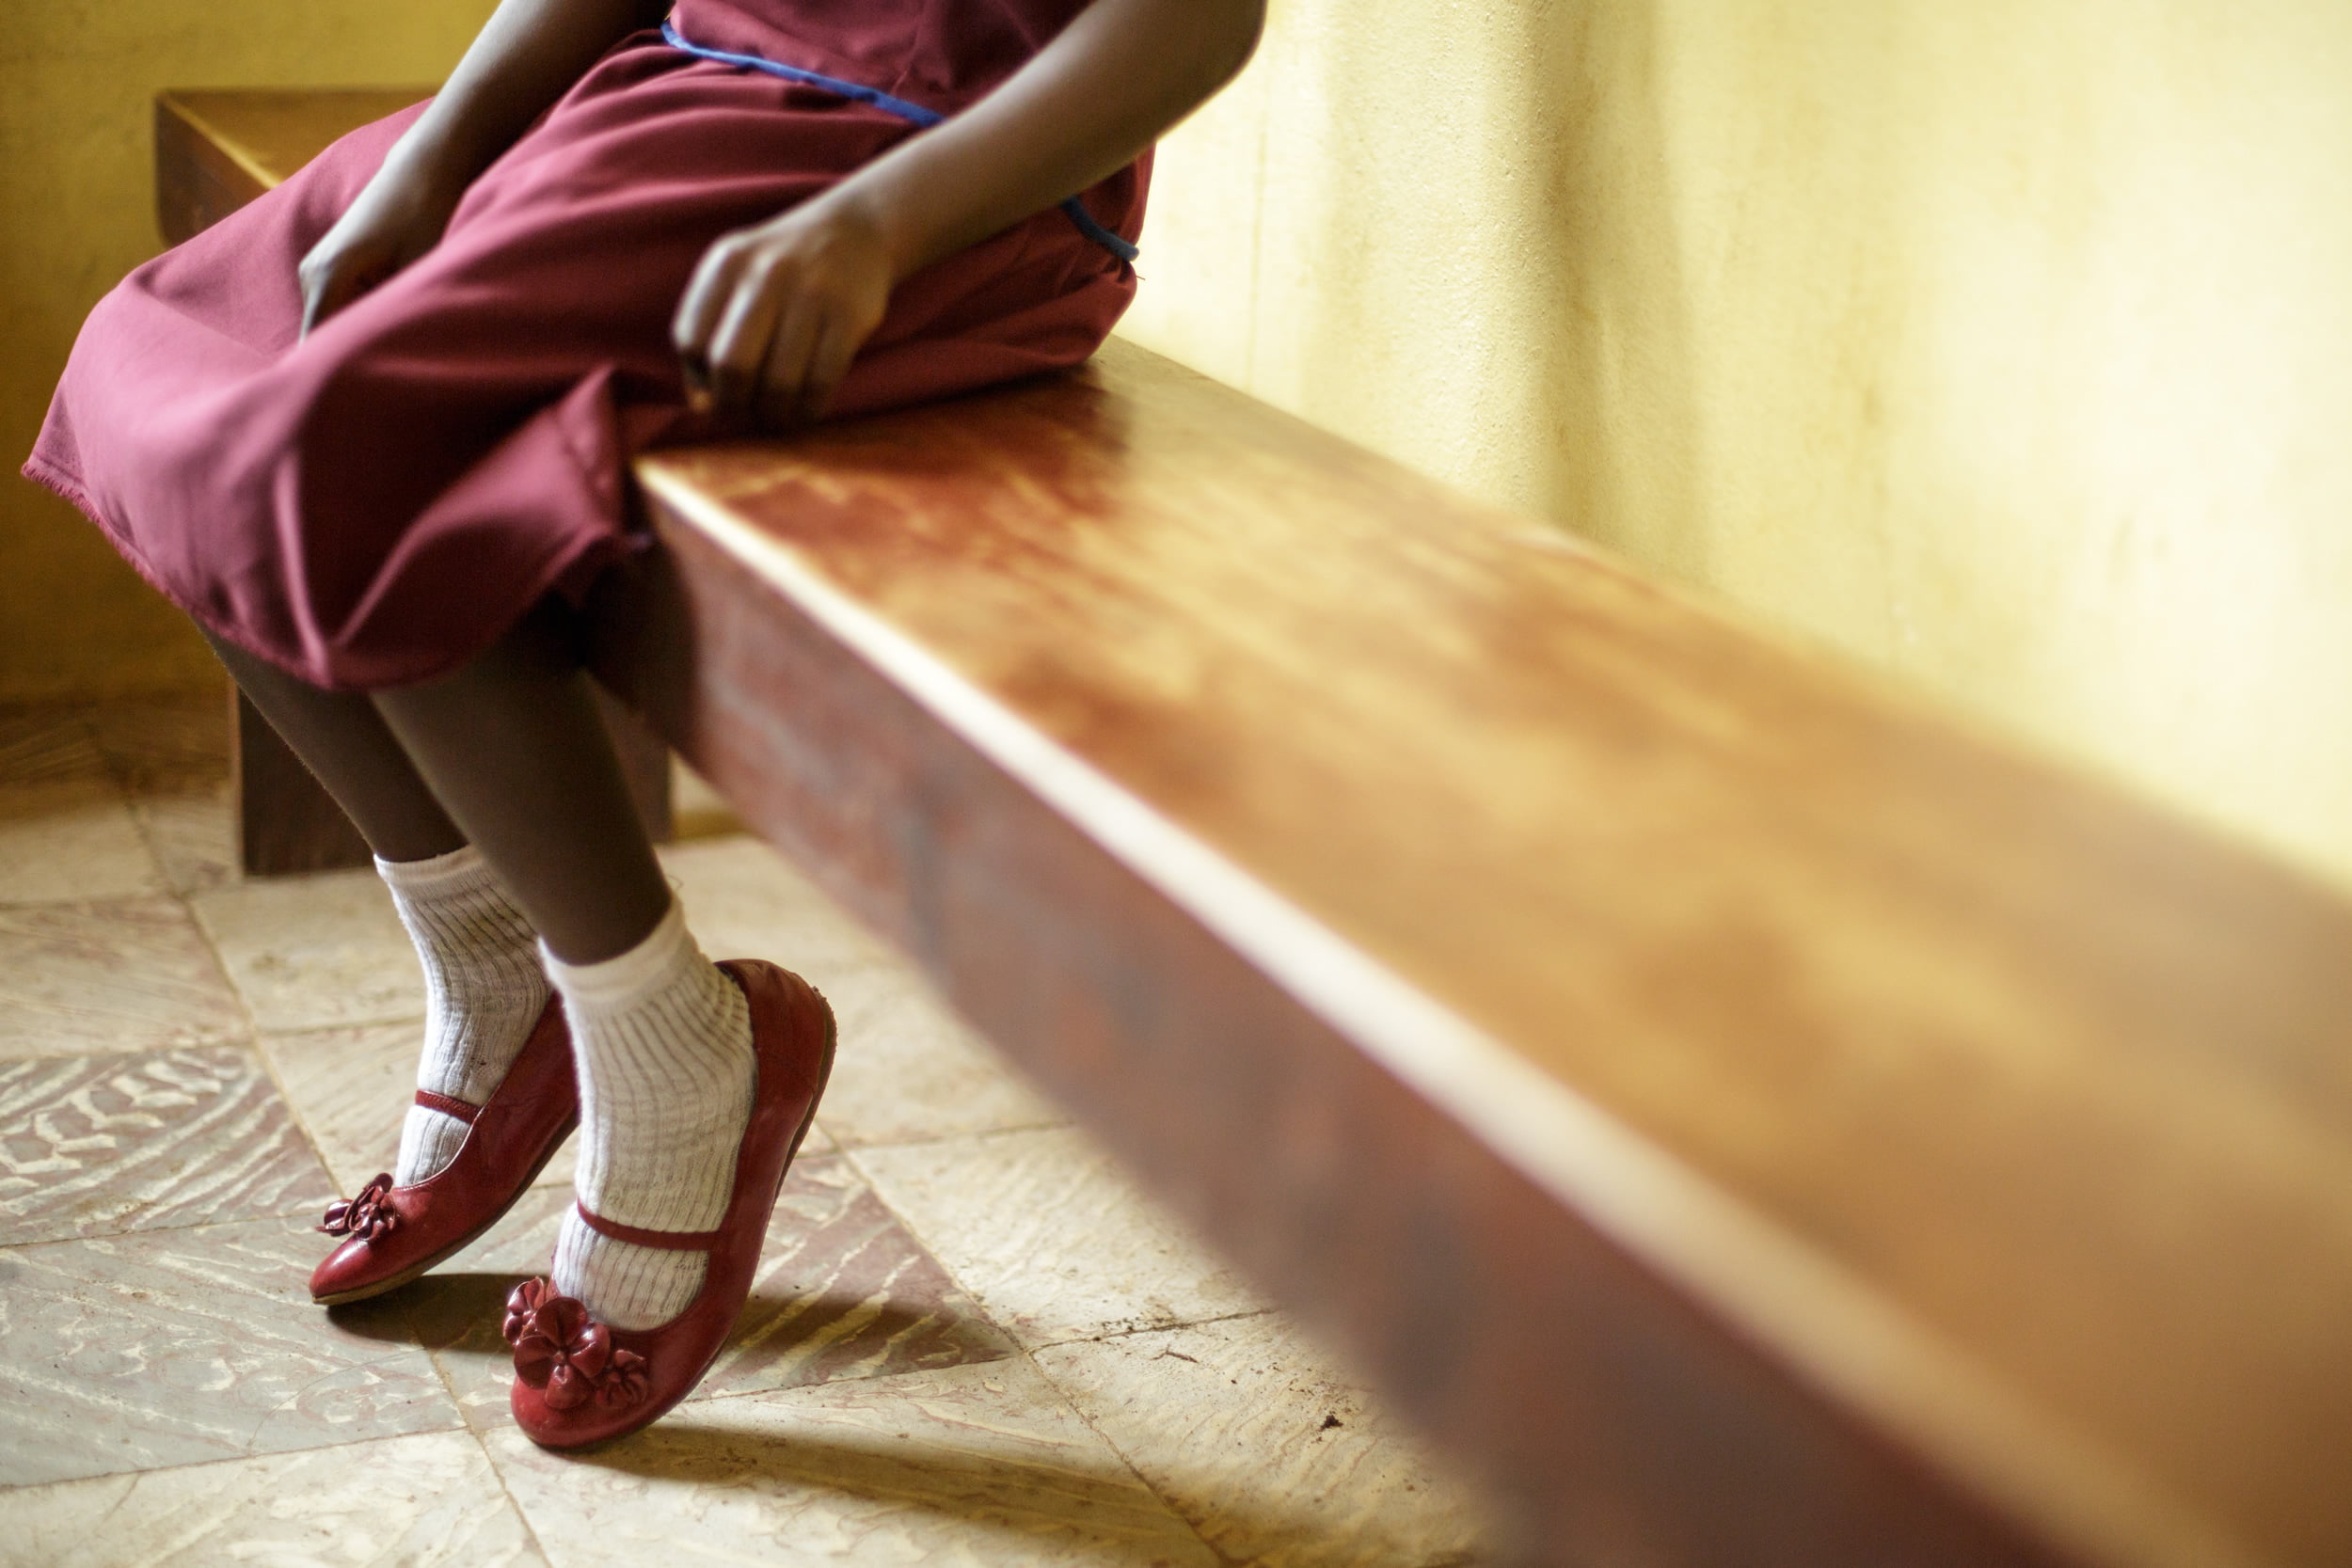 Plus de 100 enfants examinés pour mutilation génitale mais aucun résultat - 3